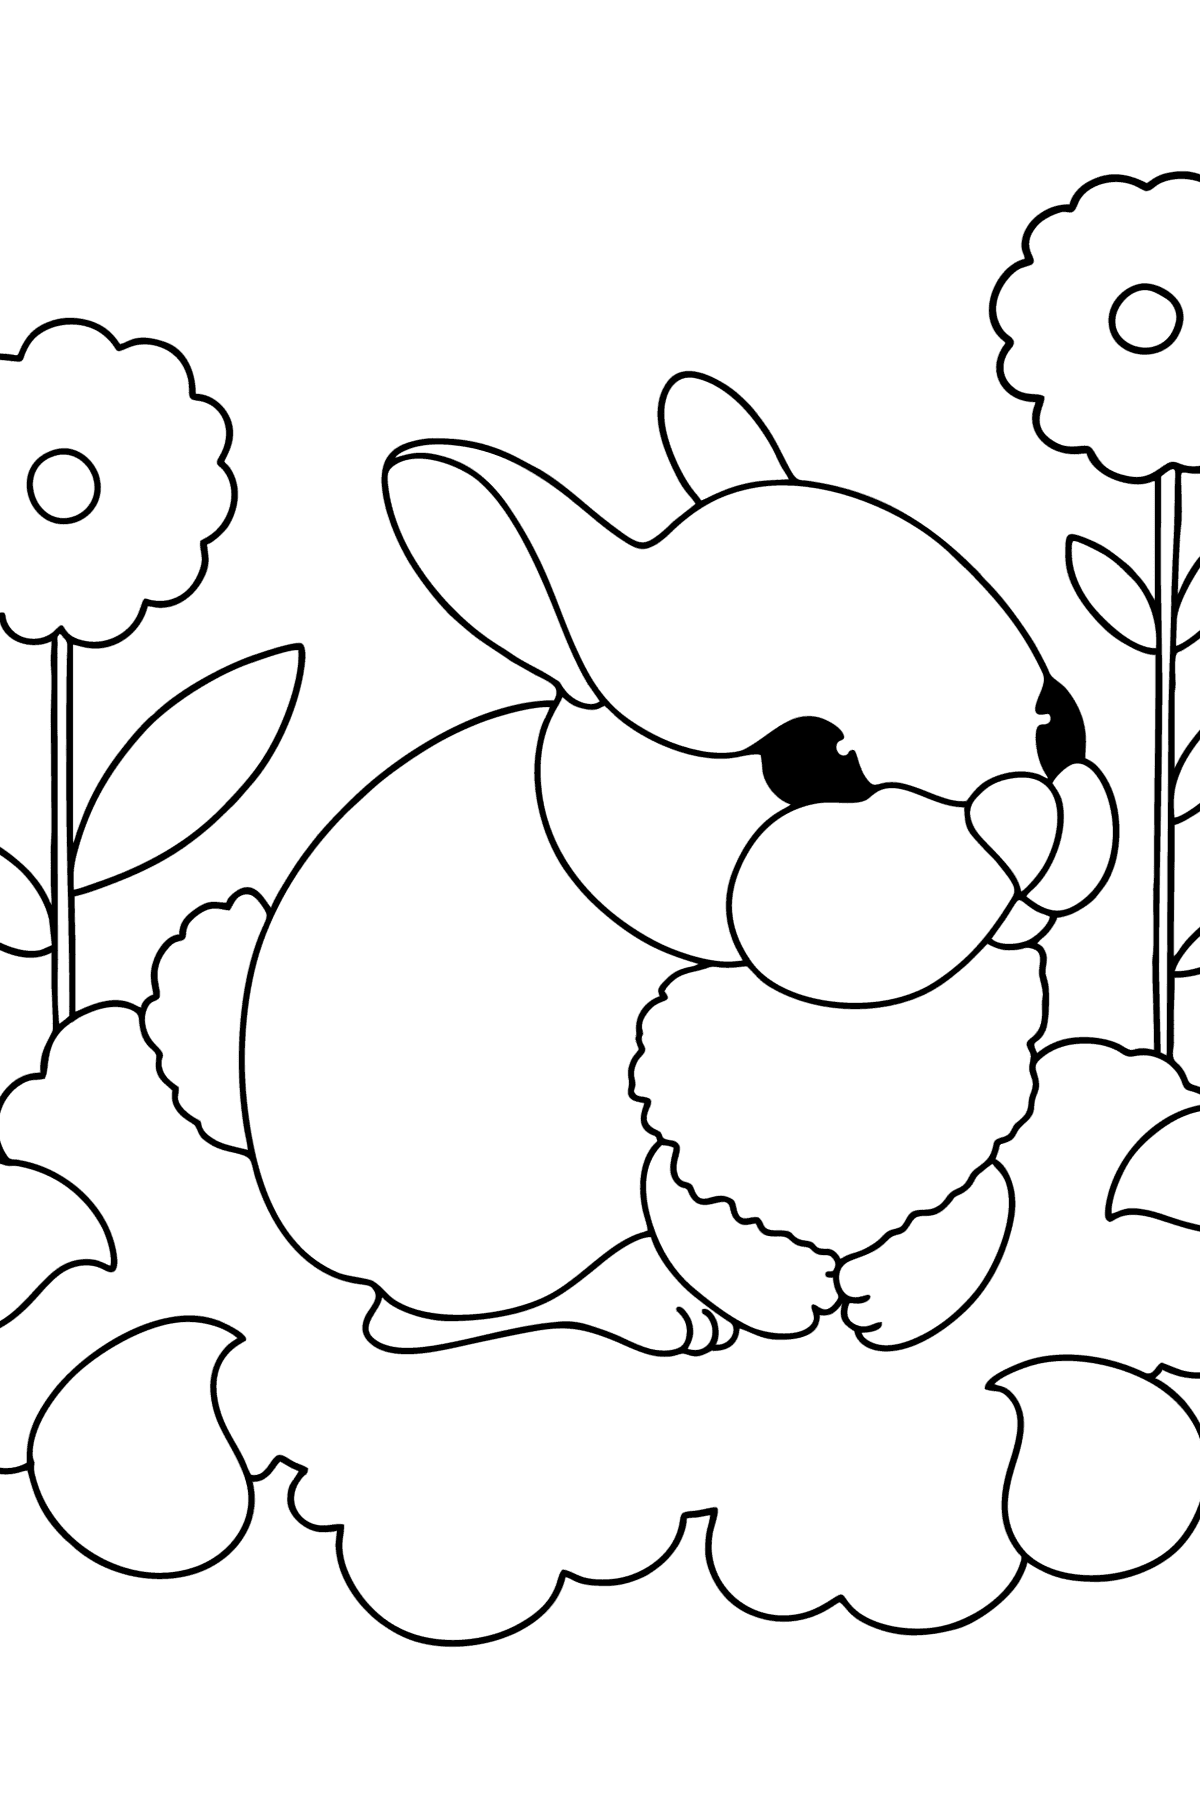 Tegning til fargelegging baby kanin - Tegninger til fargelegging for barn